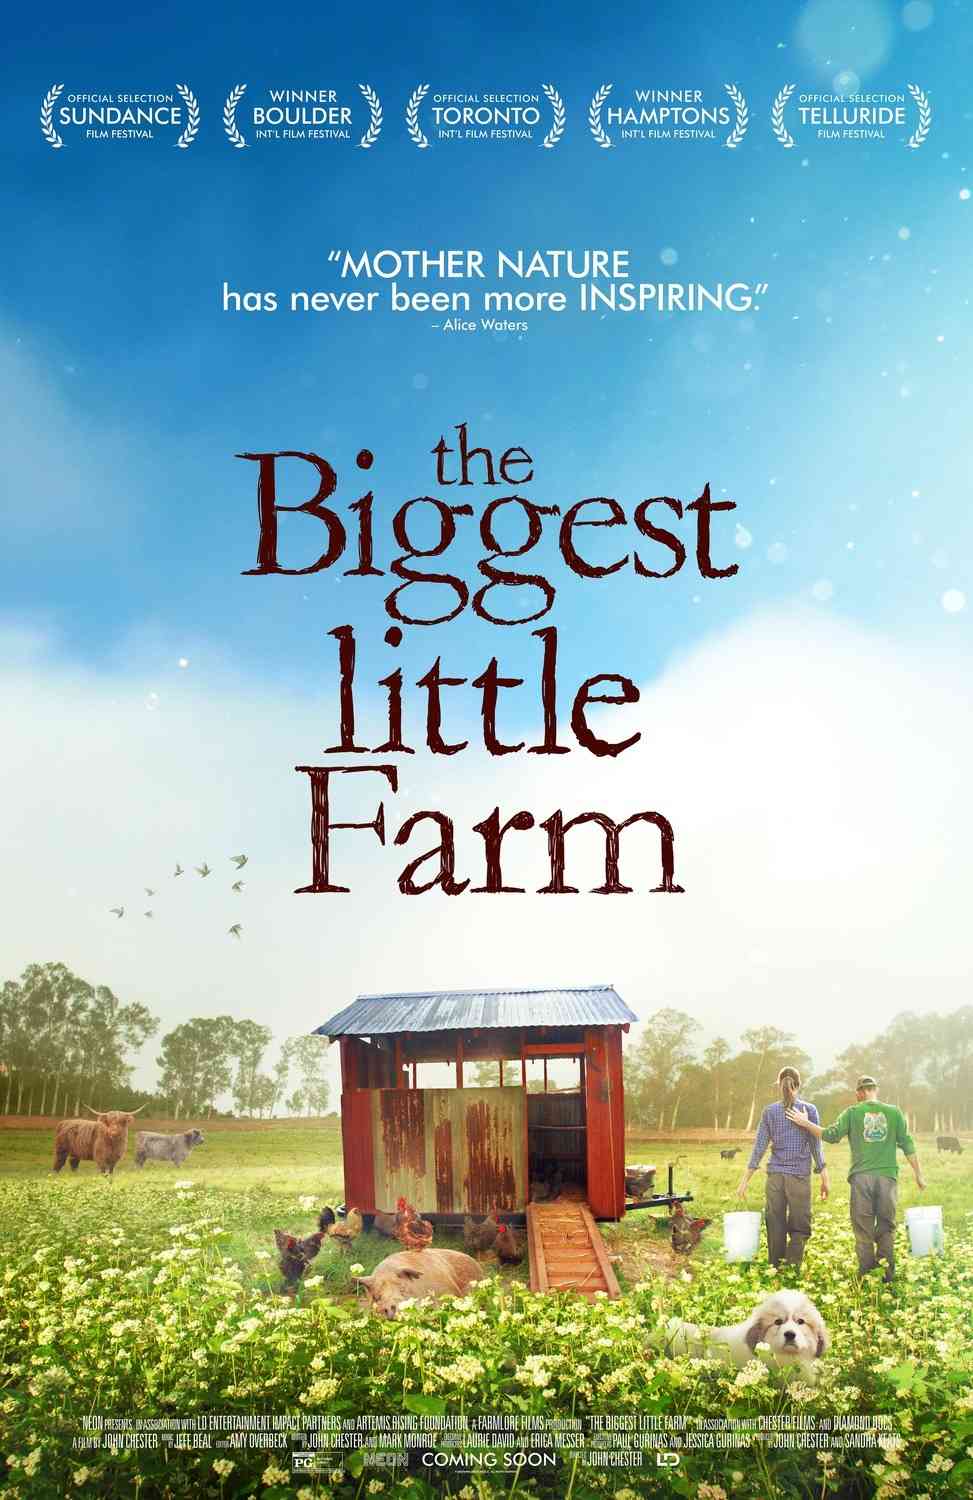 The Biggest Little Farm: Kala Hidup (Mustinya) Bisa Seseimbang Itu